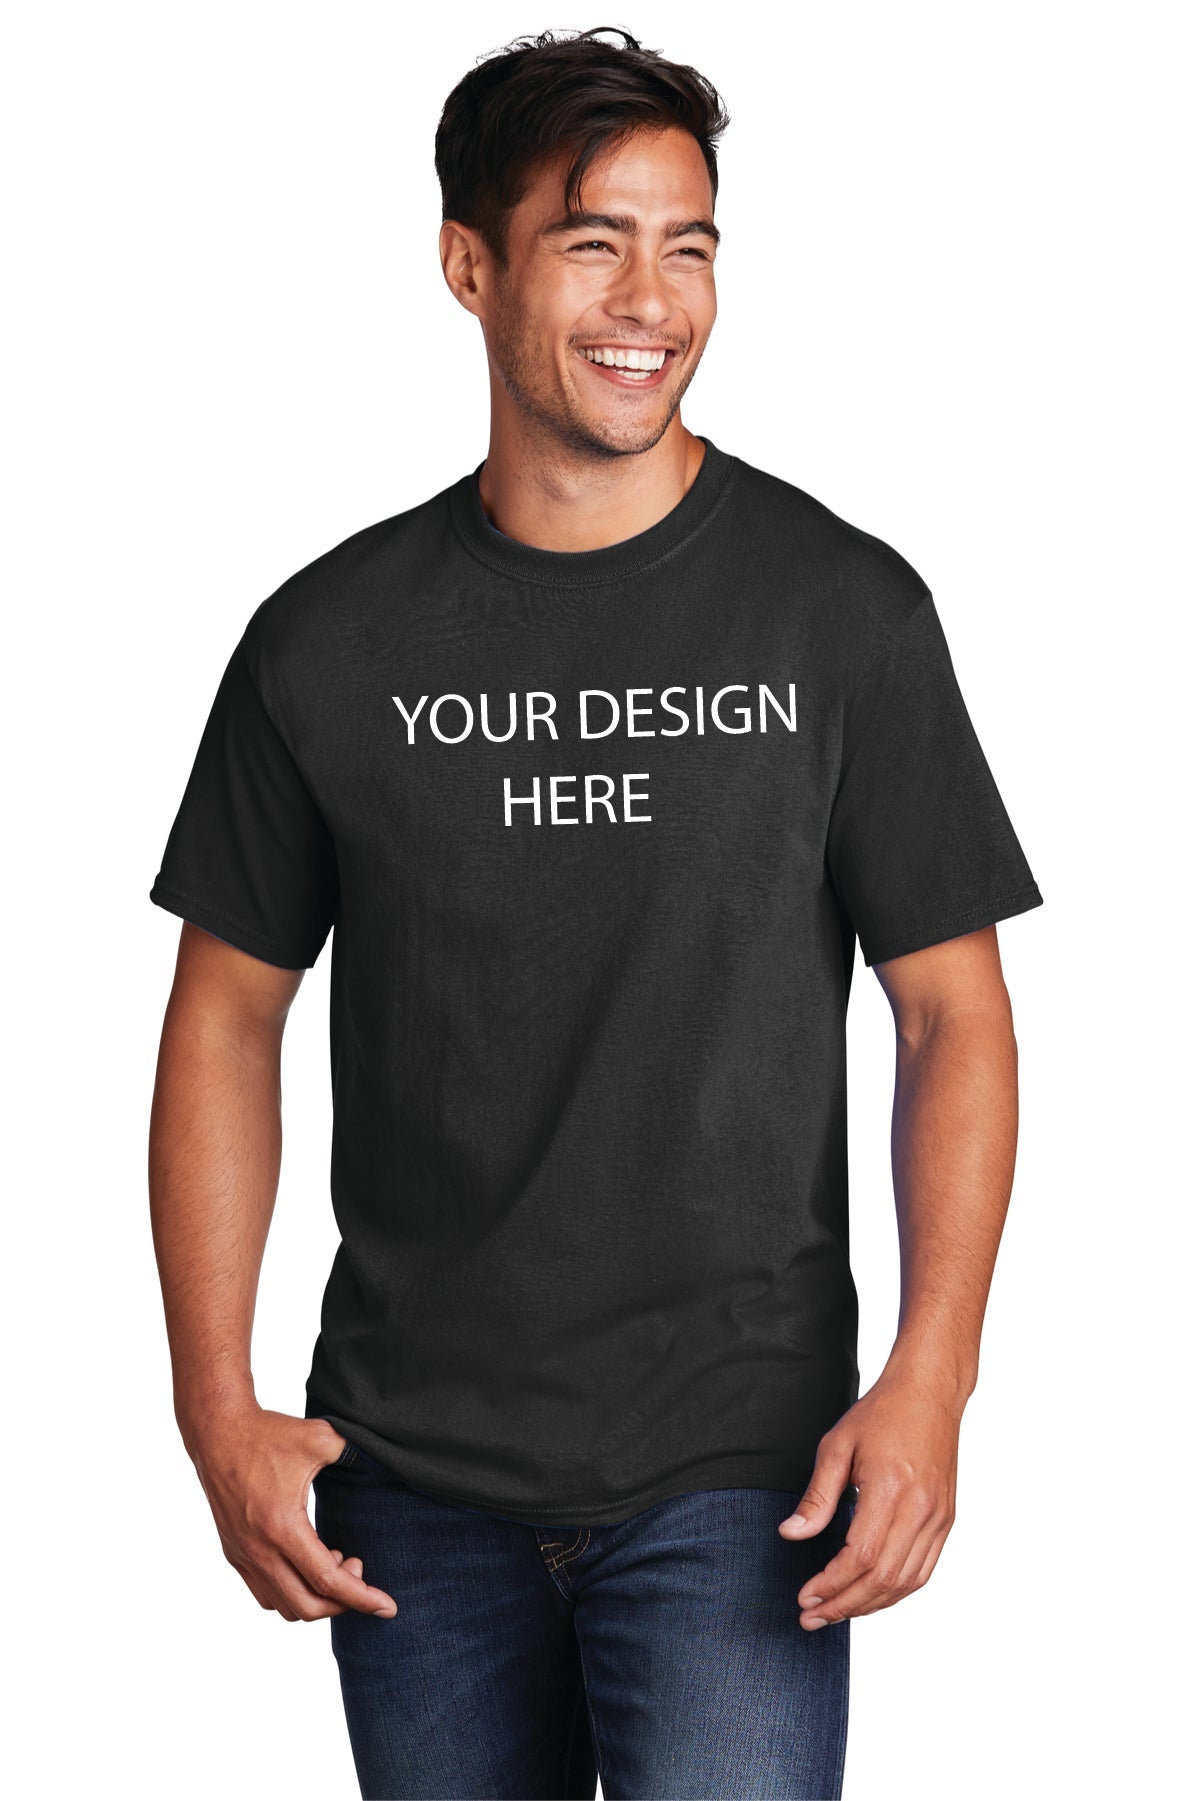 Print with no minimums - BT Imprintables Shirts